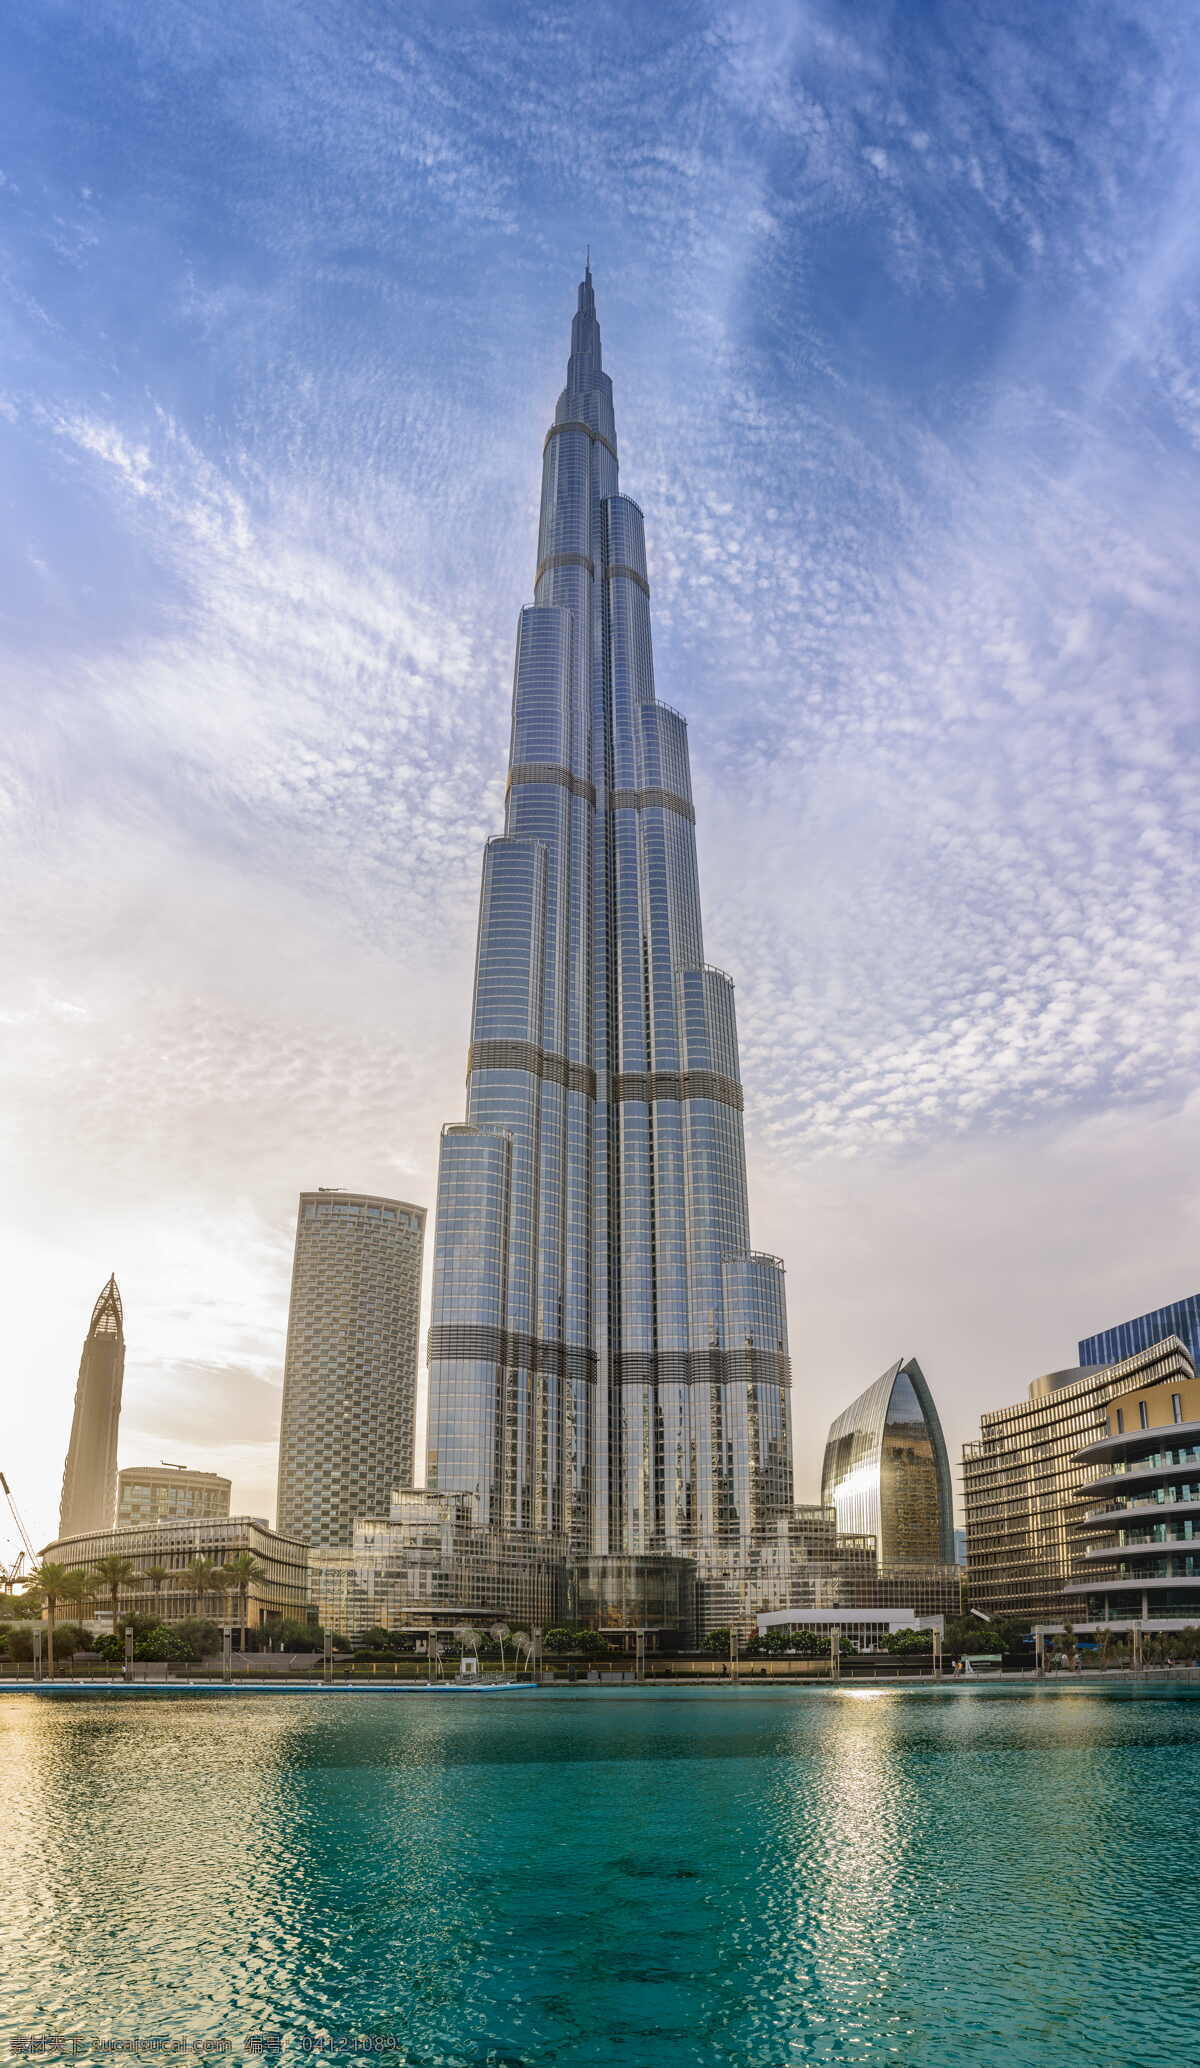 迪拜塔建筑 迪拜塔 哈里发塔 地标建筑 超高层建筑 商务楼 高楼大厦 建筑园林 建筑摄影